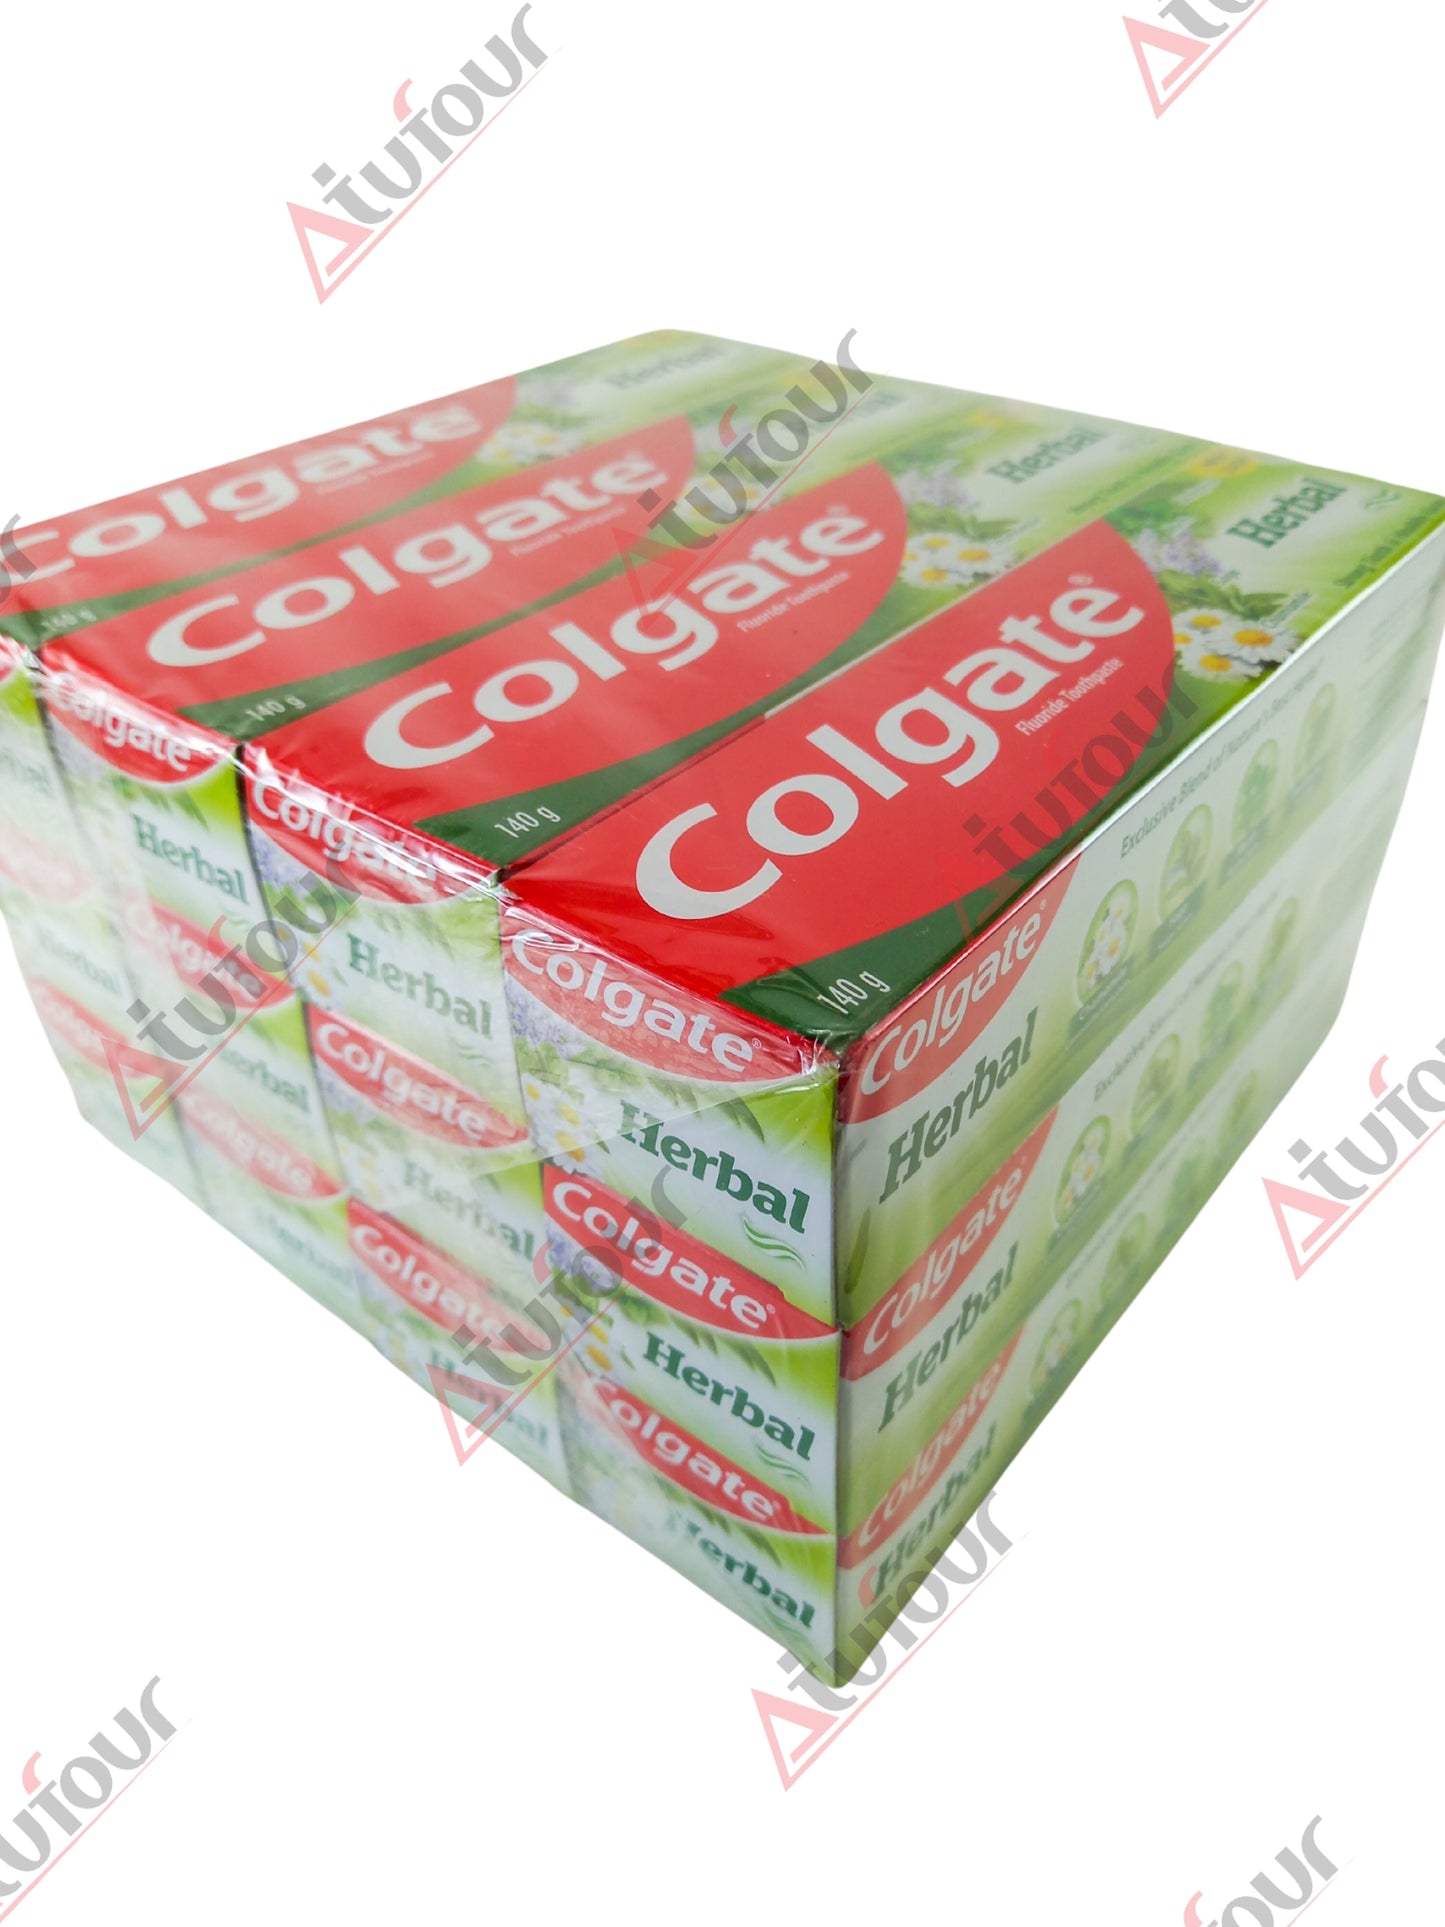 Colgate Herbal Toothpaste 70g